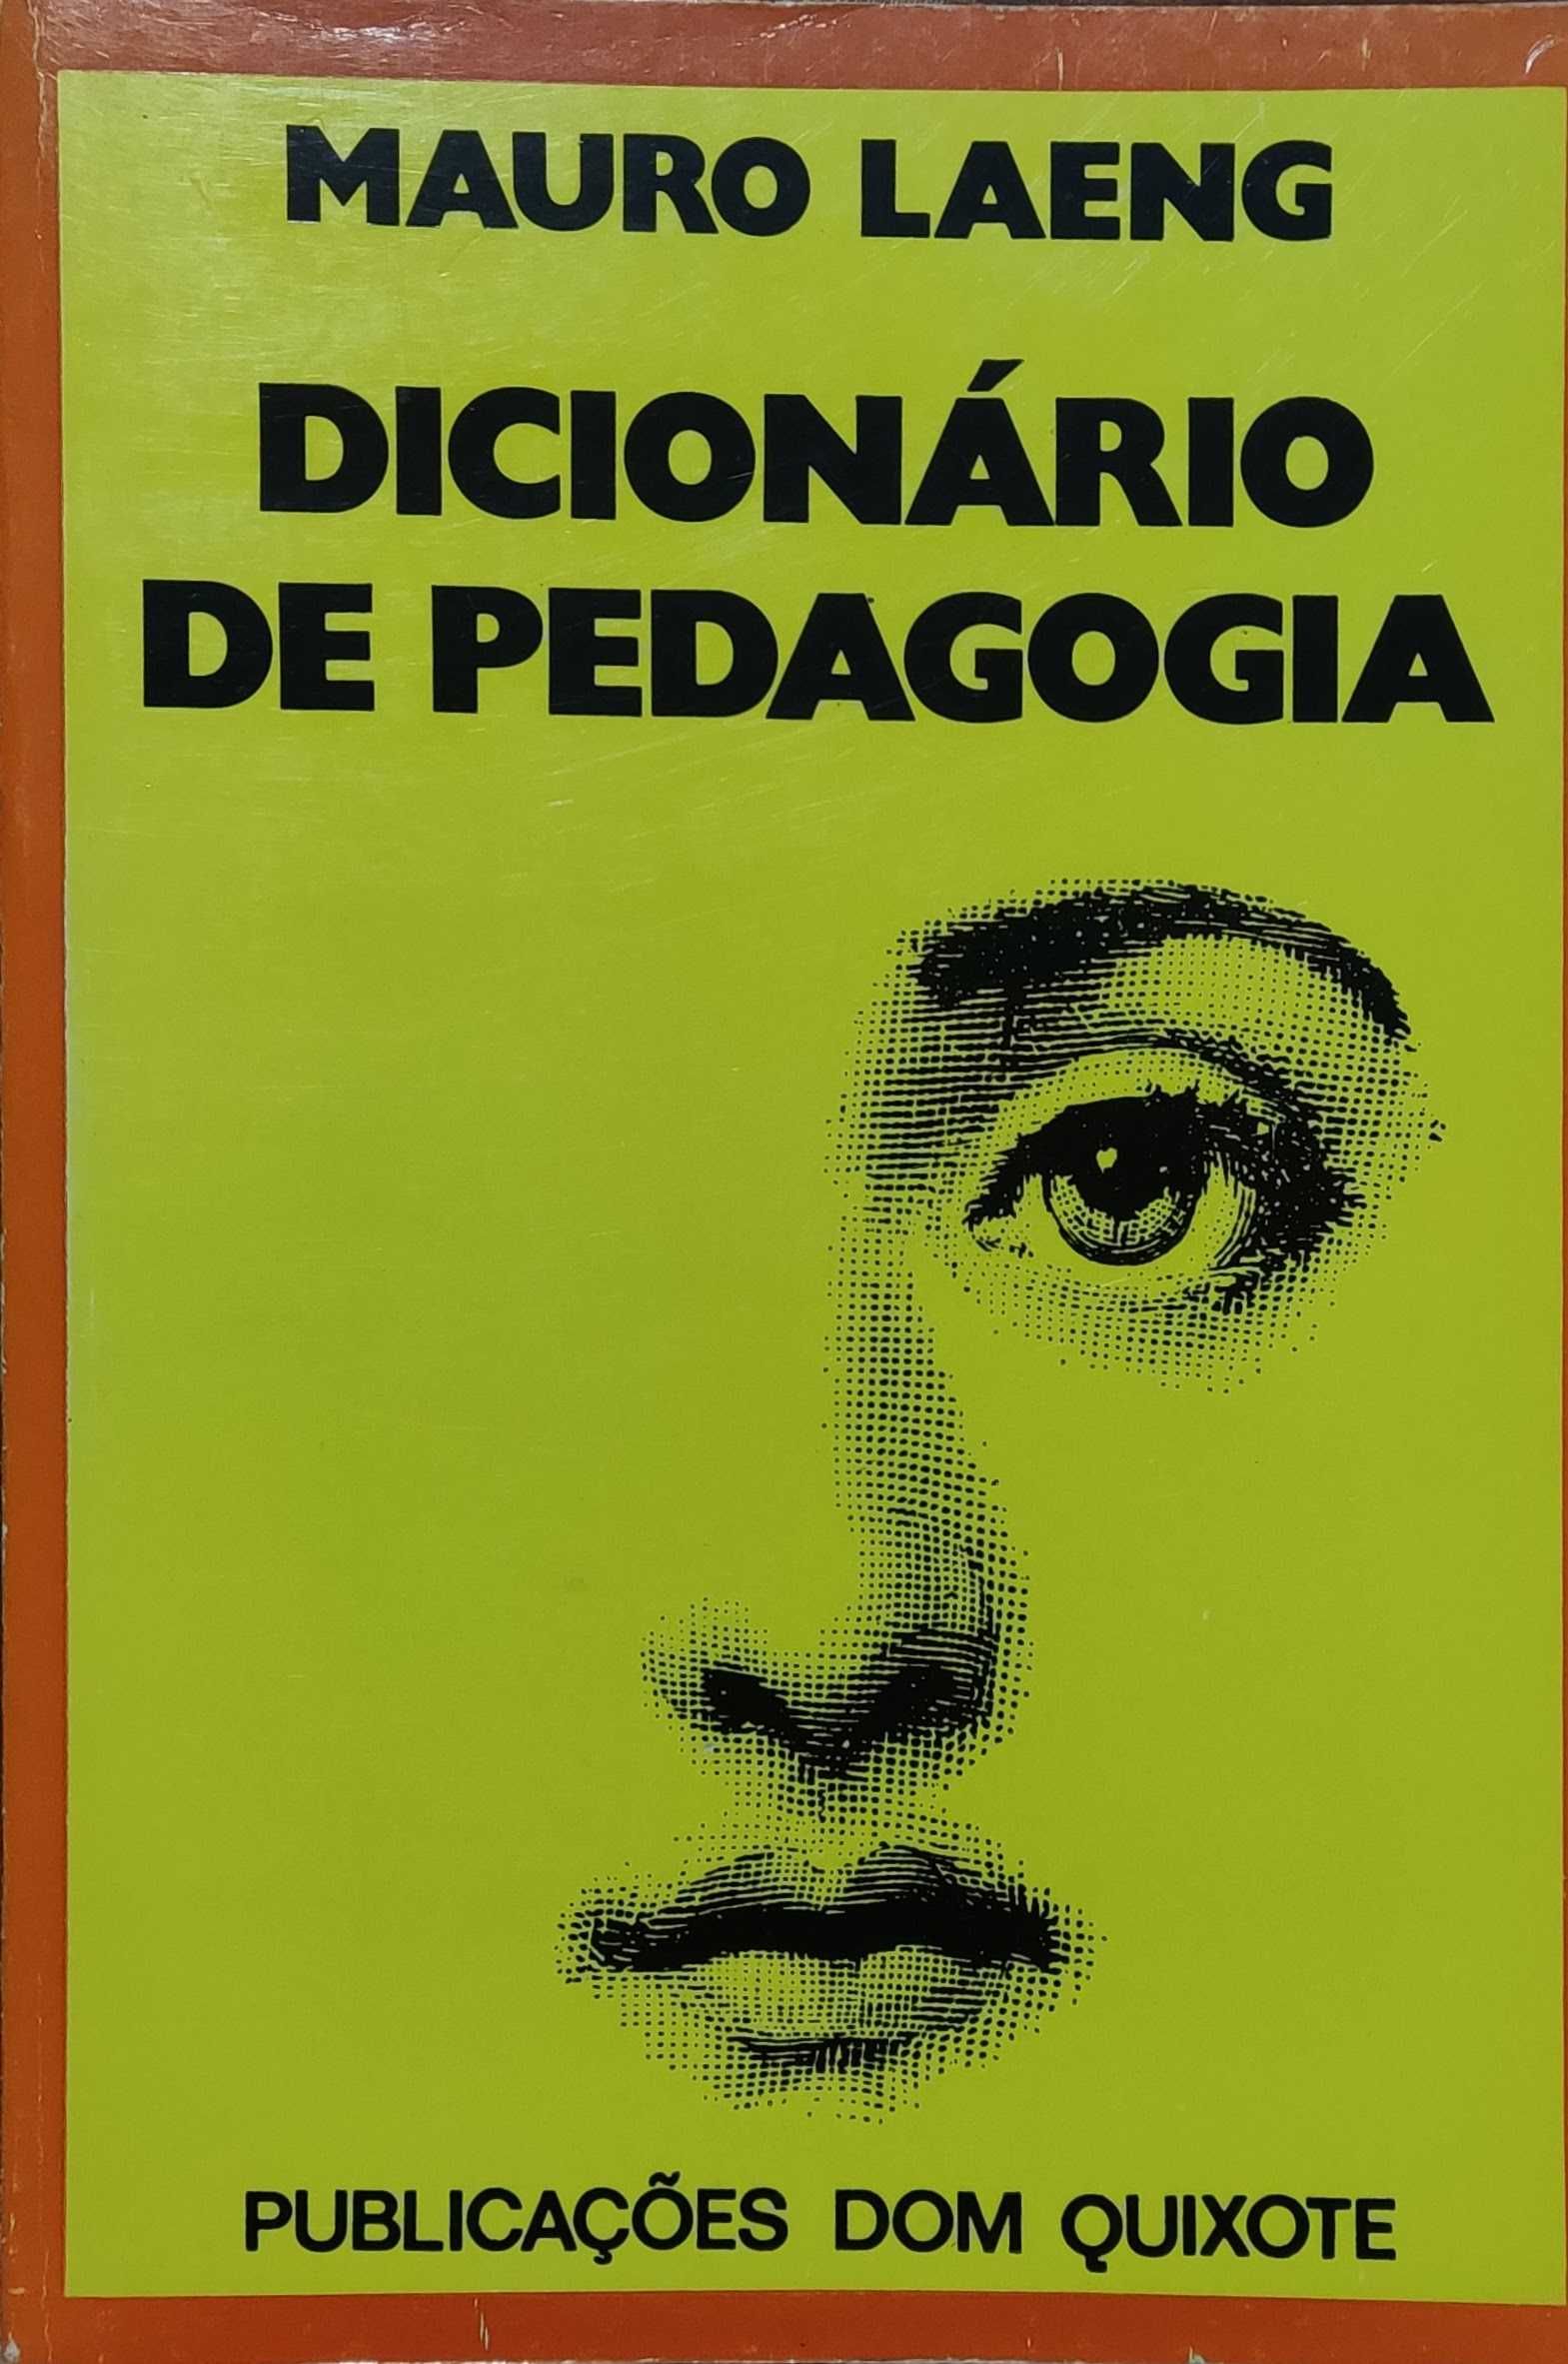 Livro "Dicionário de Pedagogia" de Mauro Laeng